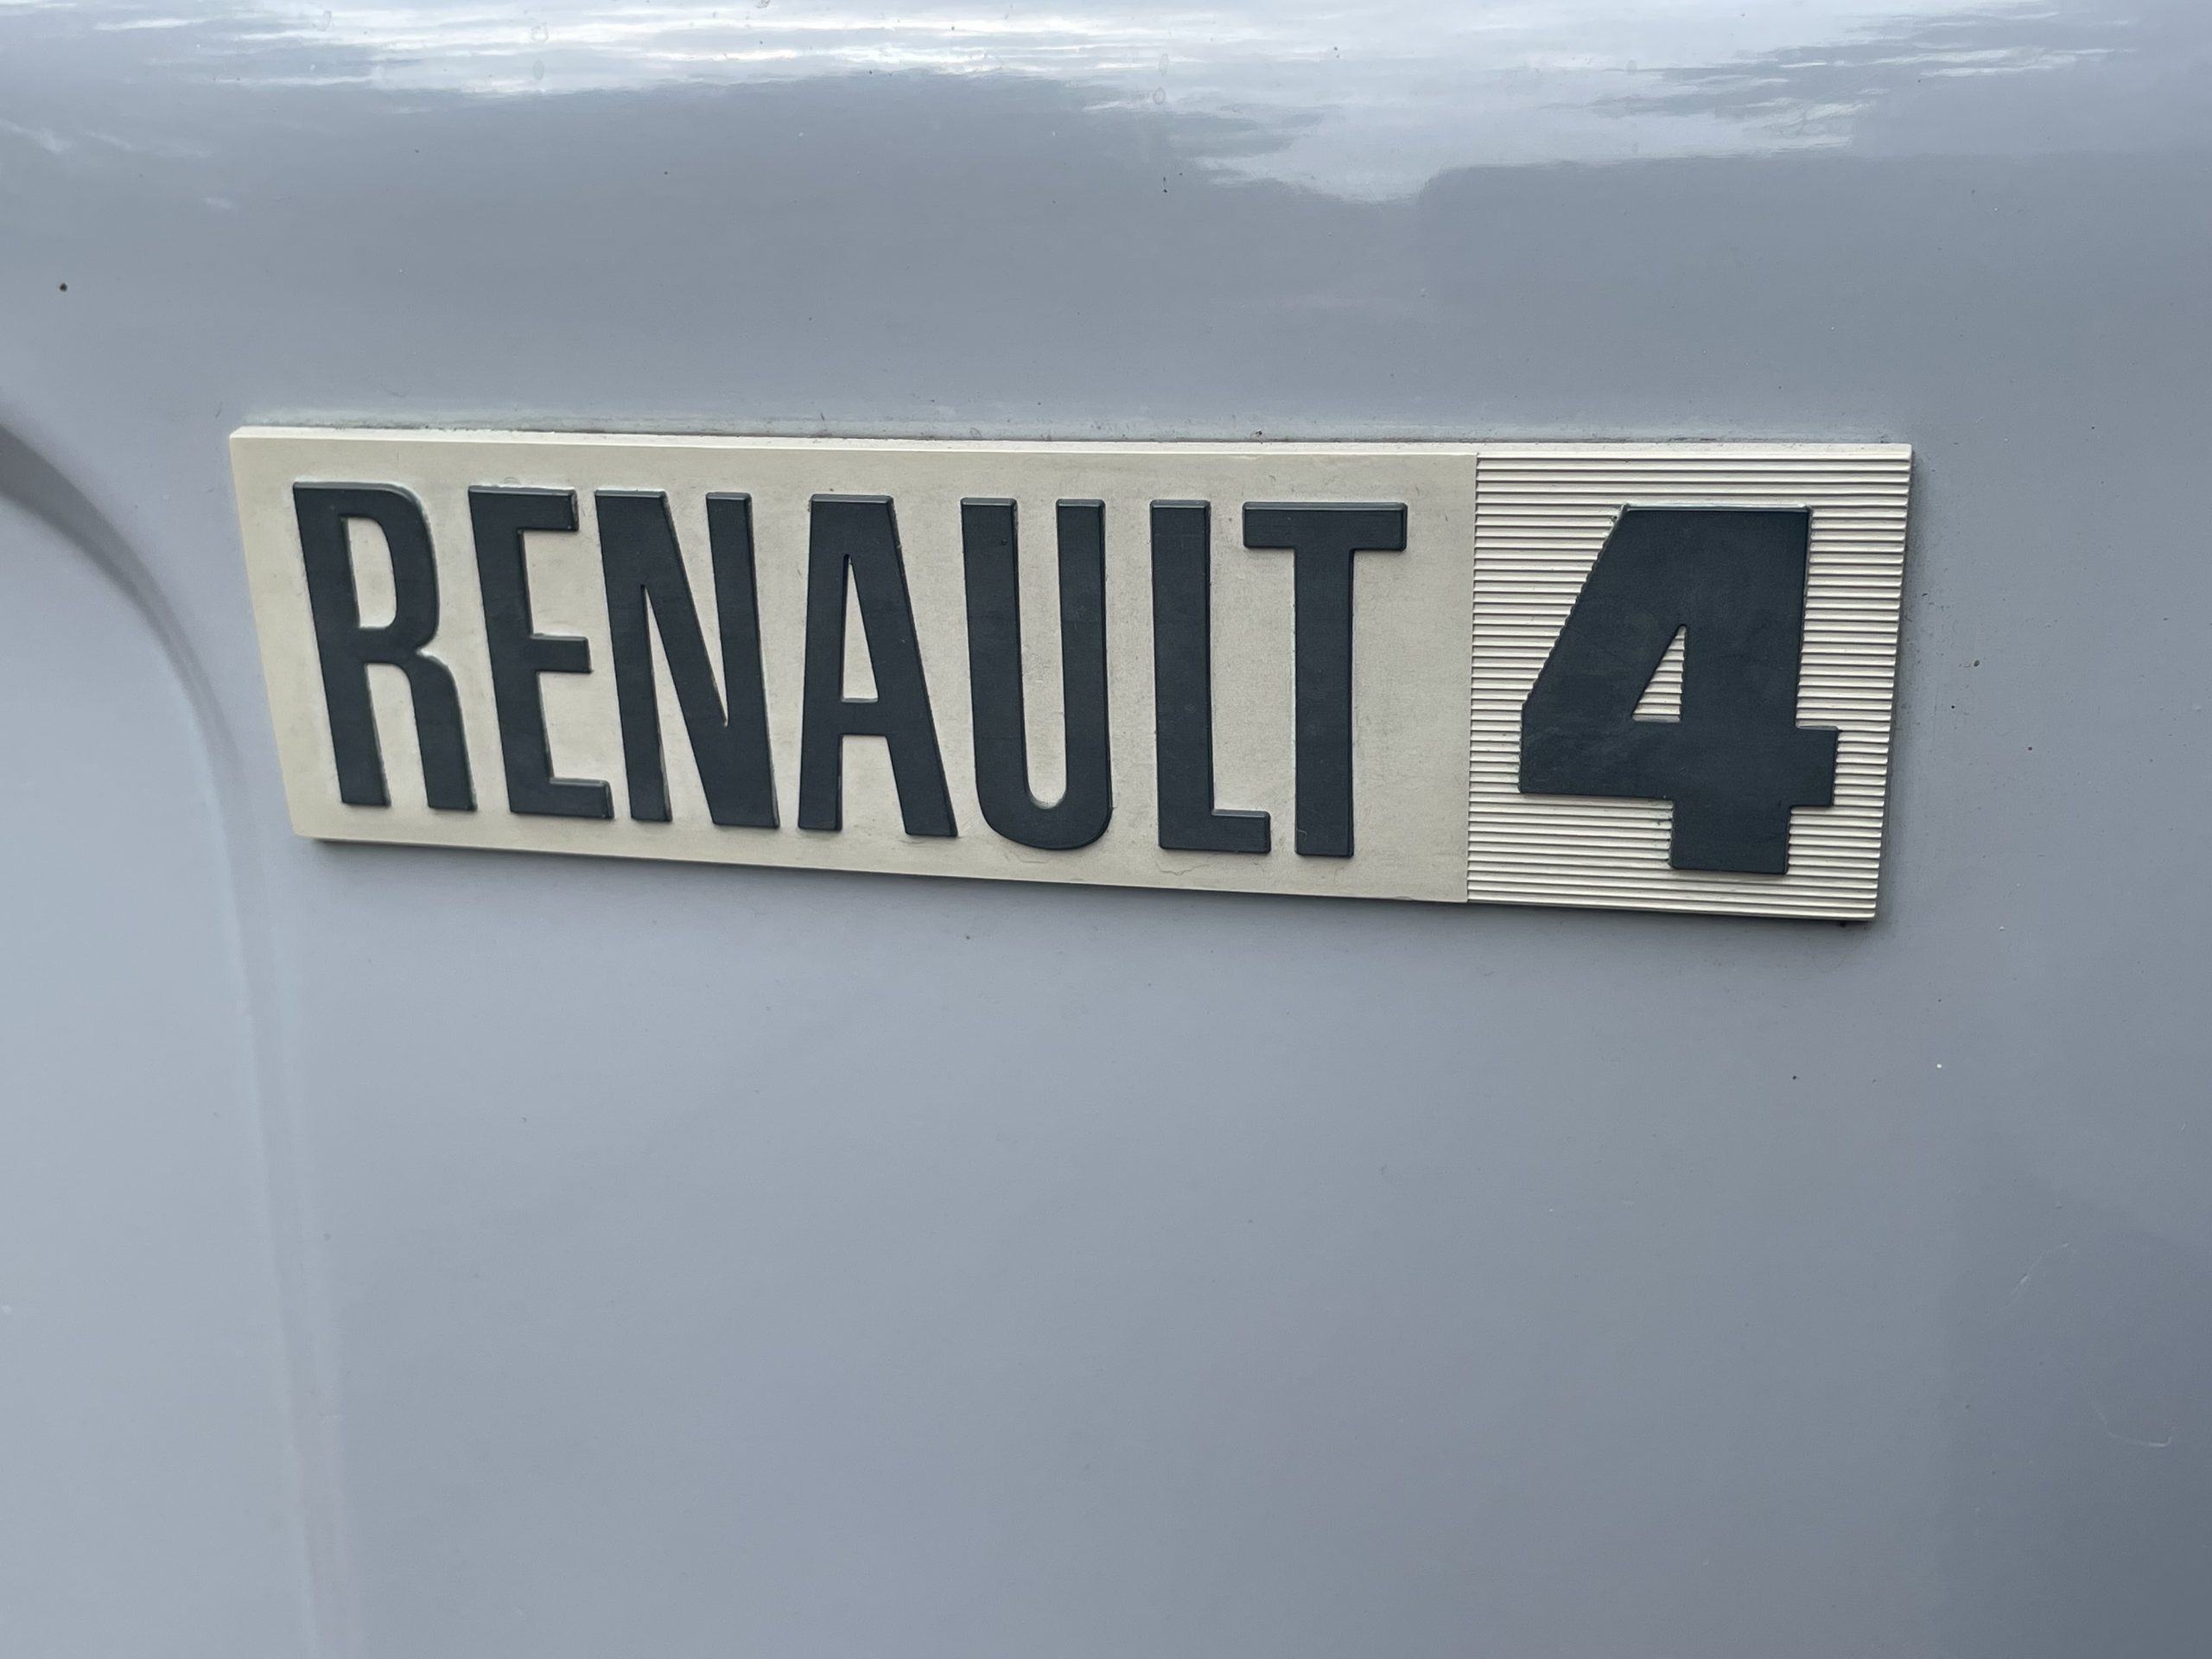 Renault R4 Fourgonette